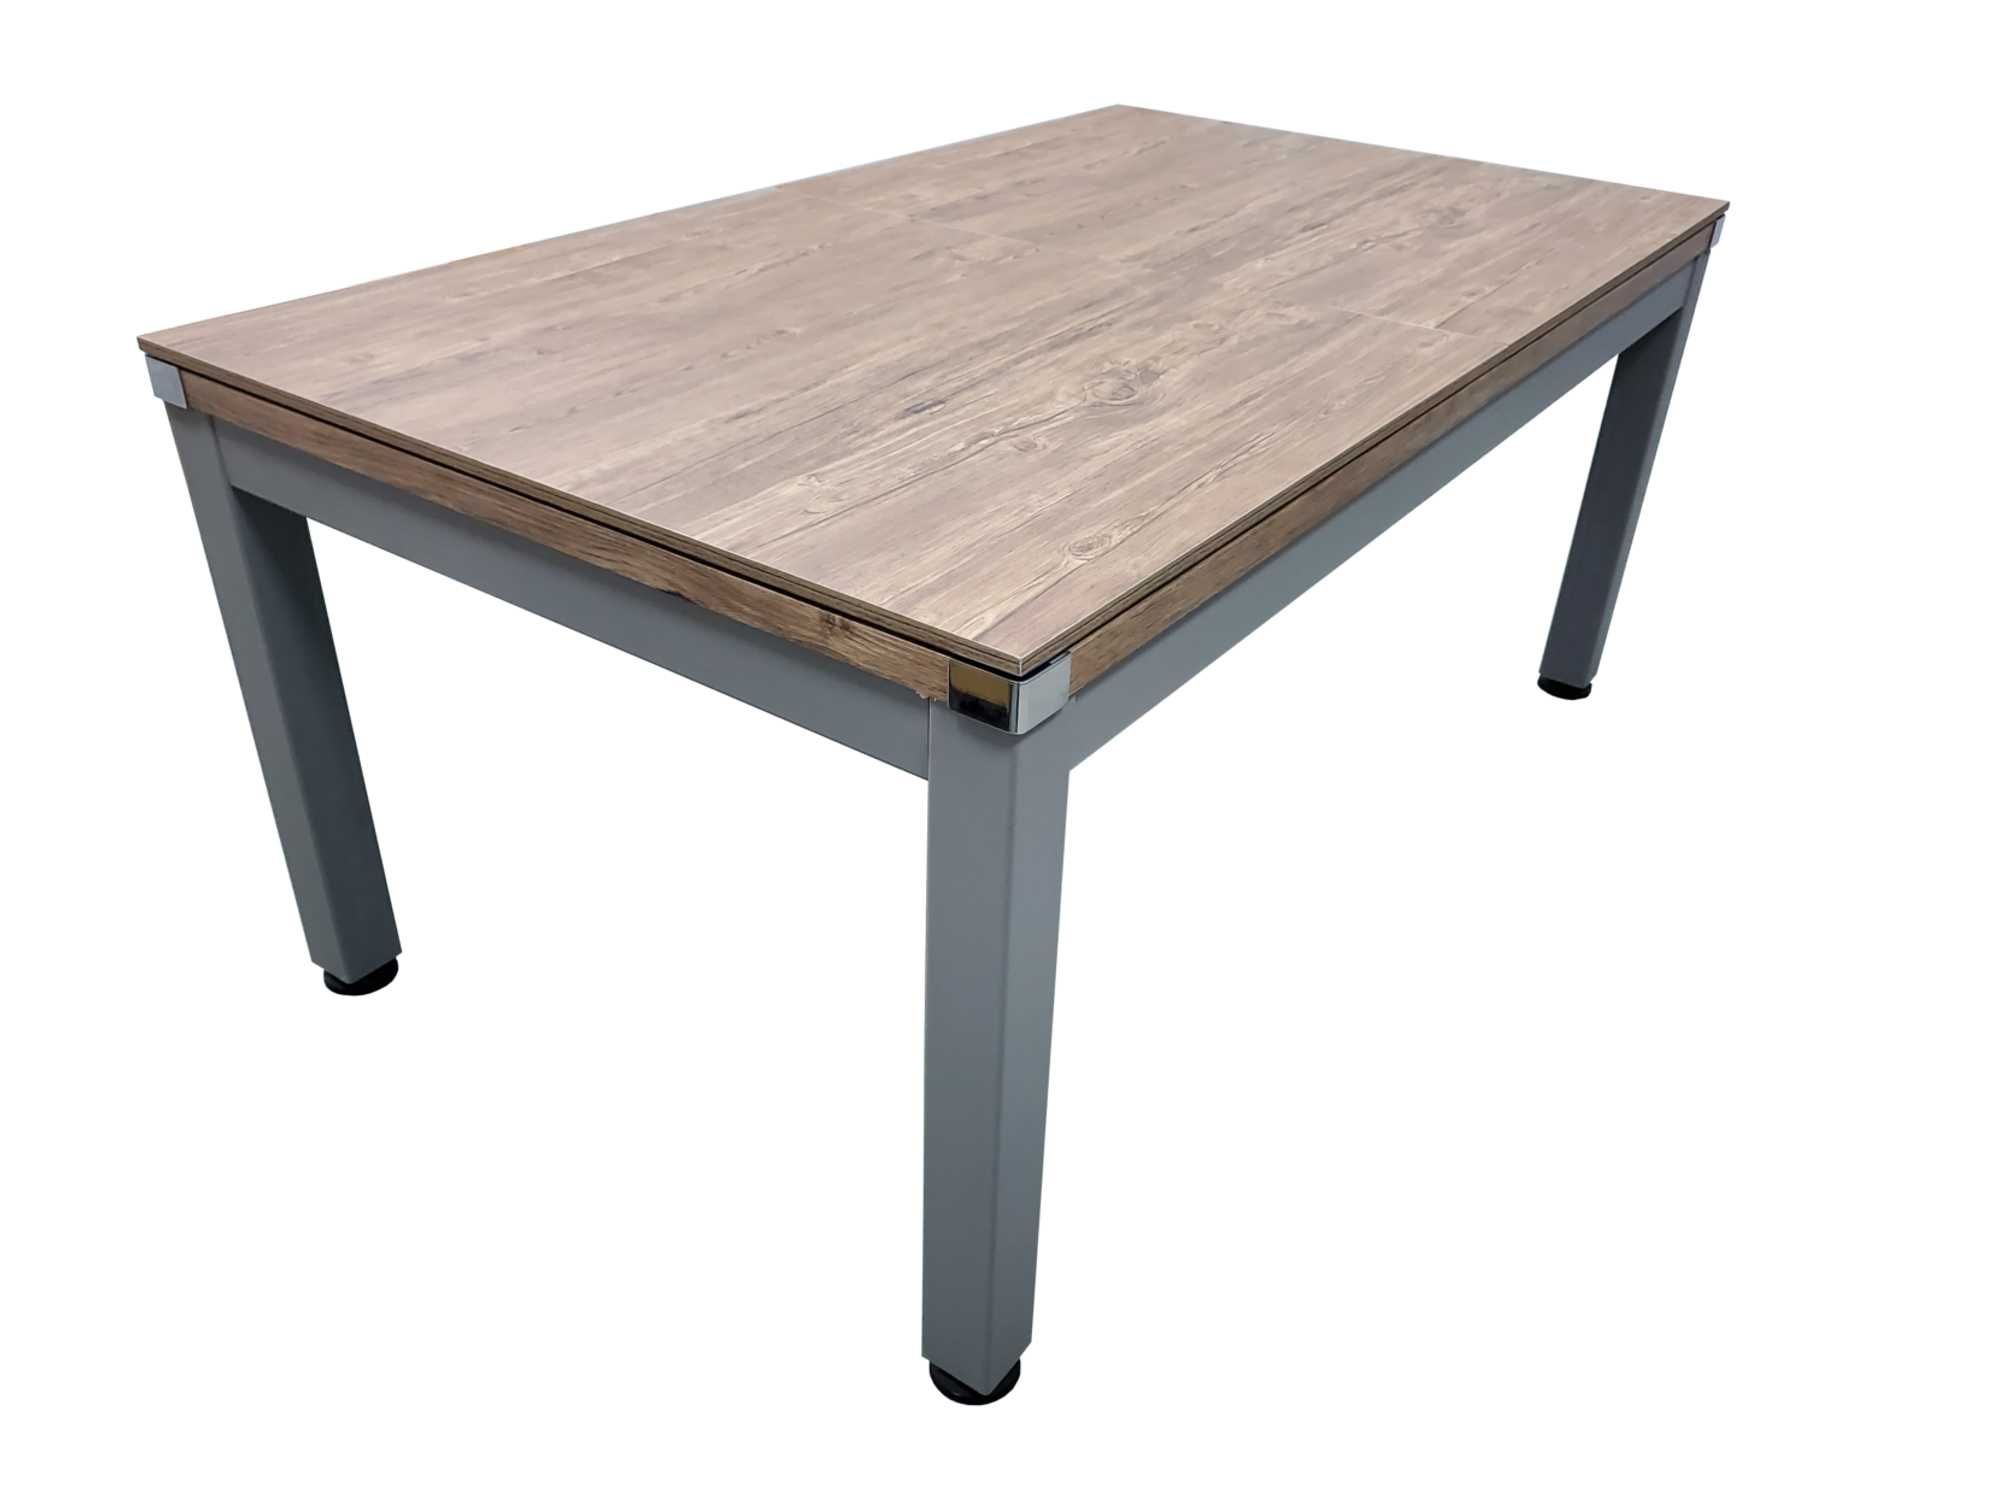 Stół bilardowy, stalowy, Modern Classic 6FT 3 w 1, tenis stołowy, stół